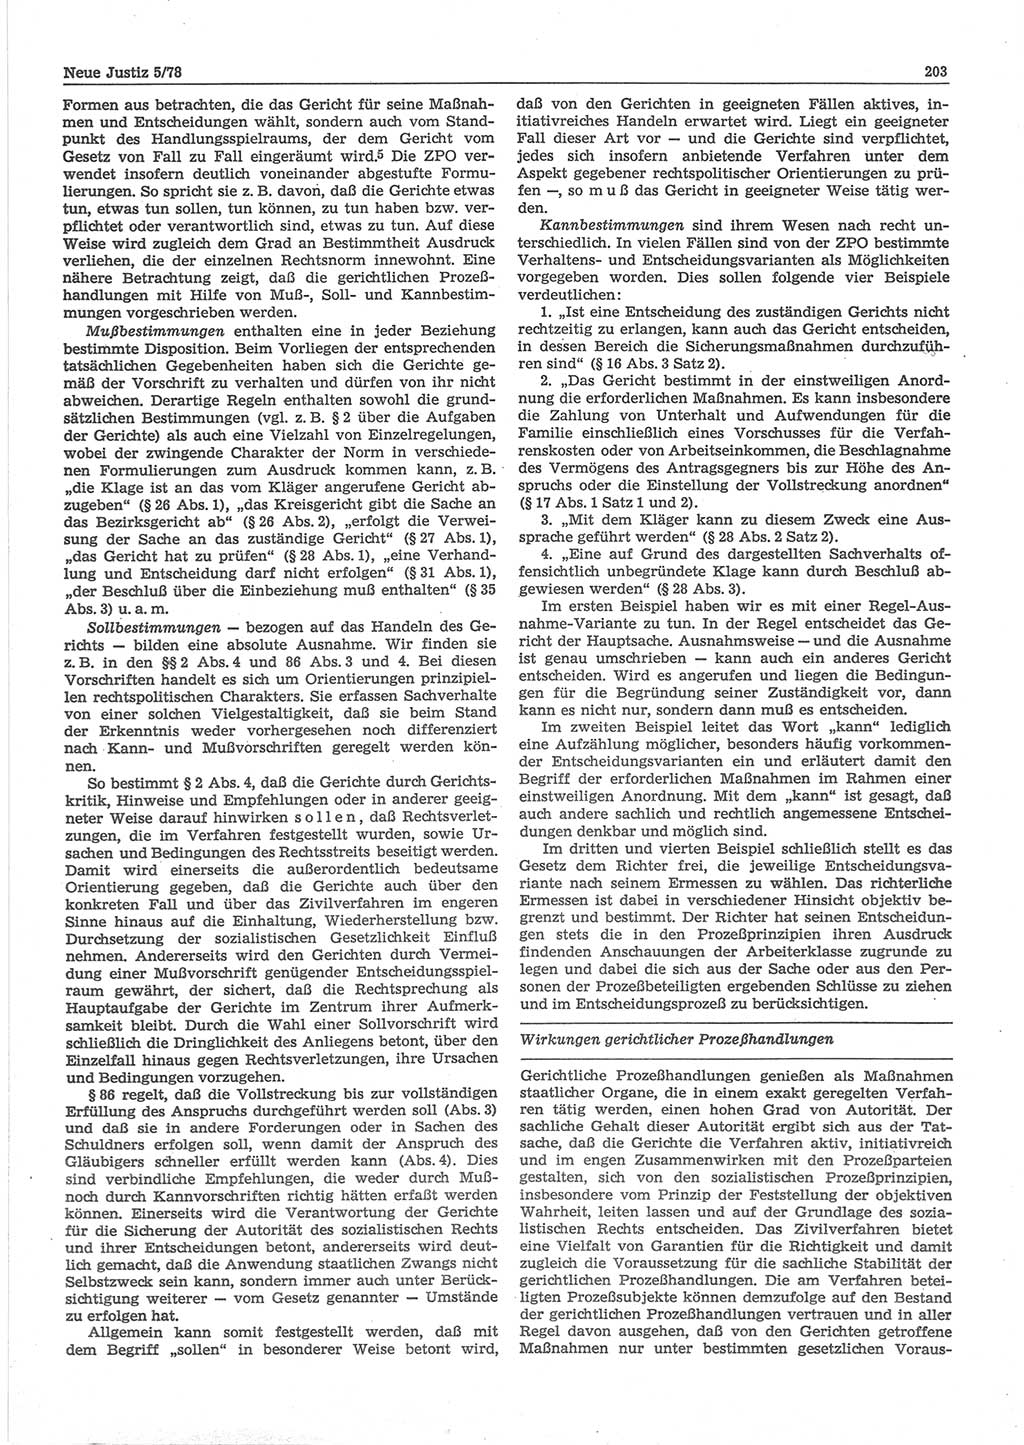 Neue Justiz (NJ), Zeitschrift für sozialistisches Recht und Gesetzlichkeit [Deutsche Demokratische Republik (DDR)], 32. Jahrgang 1978, Seite 203 (NJ DDR 1978, S. 203)